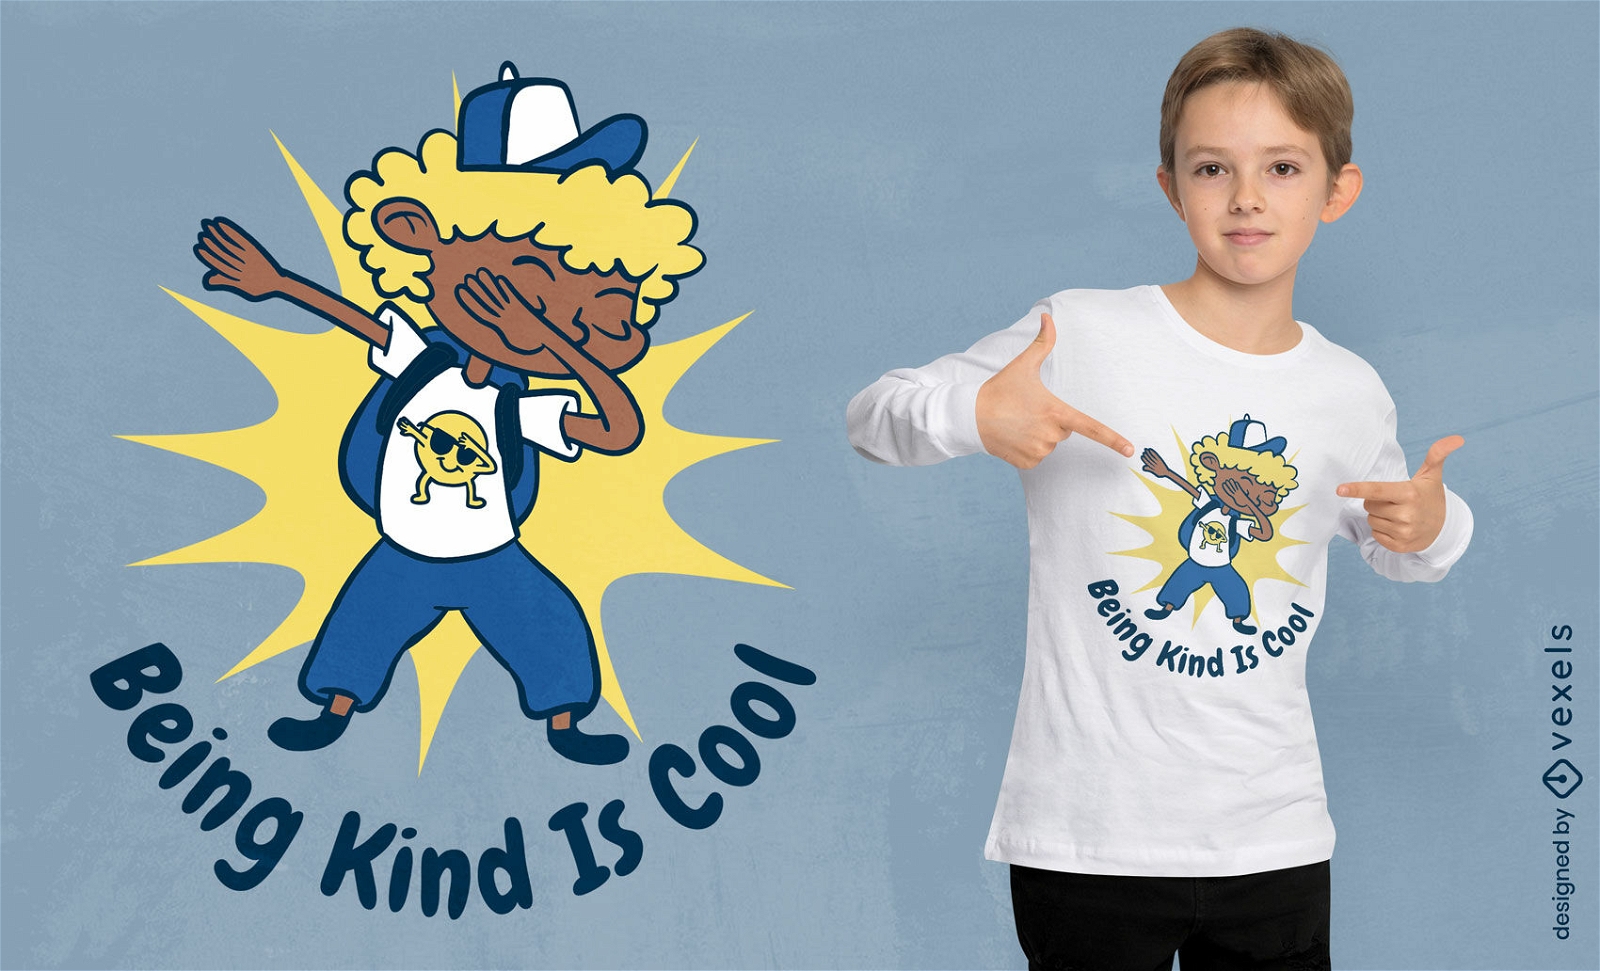 Ser amable es un diseño genial de camiseta para niños.